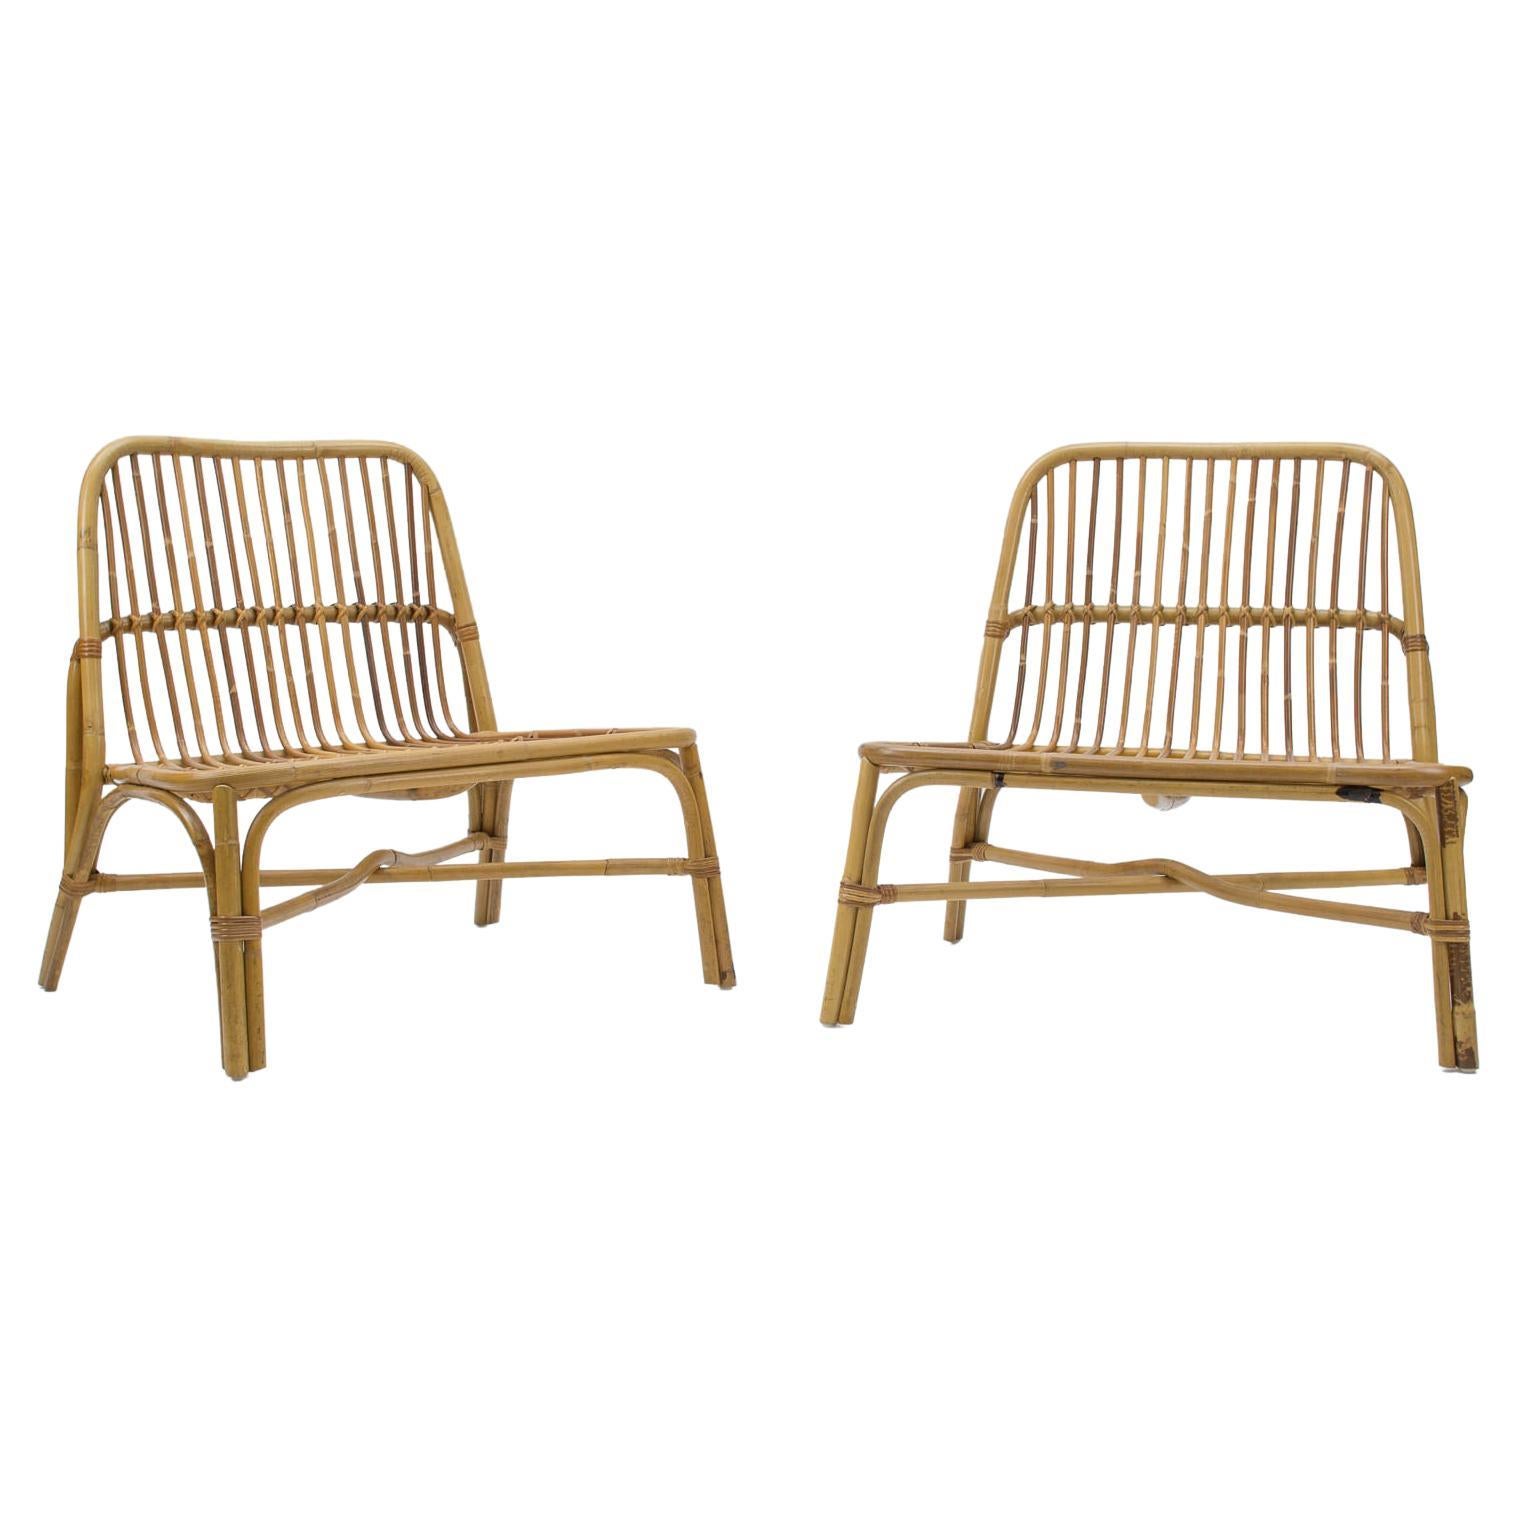 Ravissants et élégants fauteuils italiens en bambou et rotin, années 1950, lot de 2